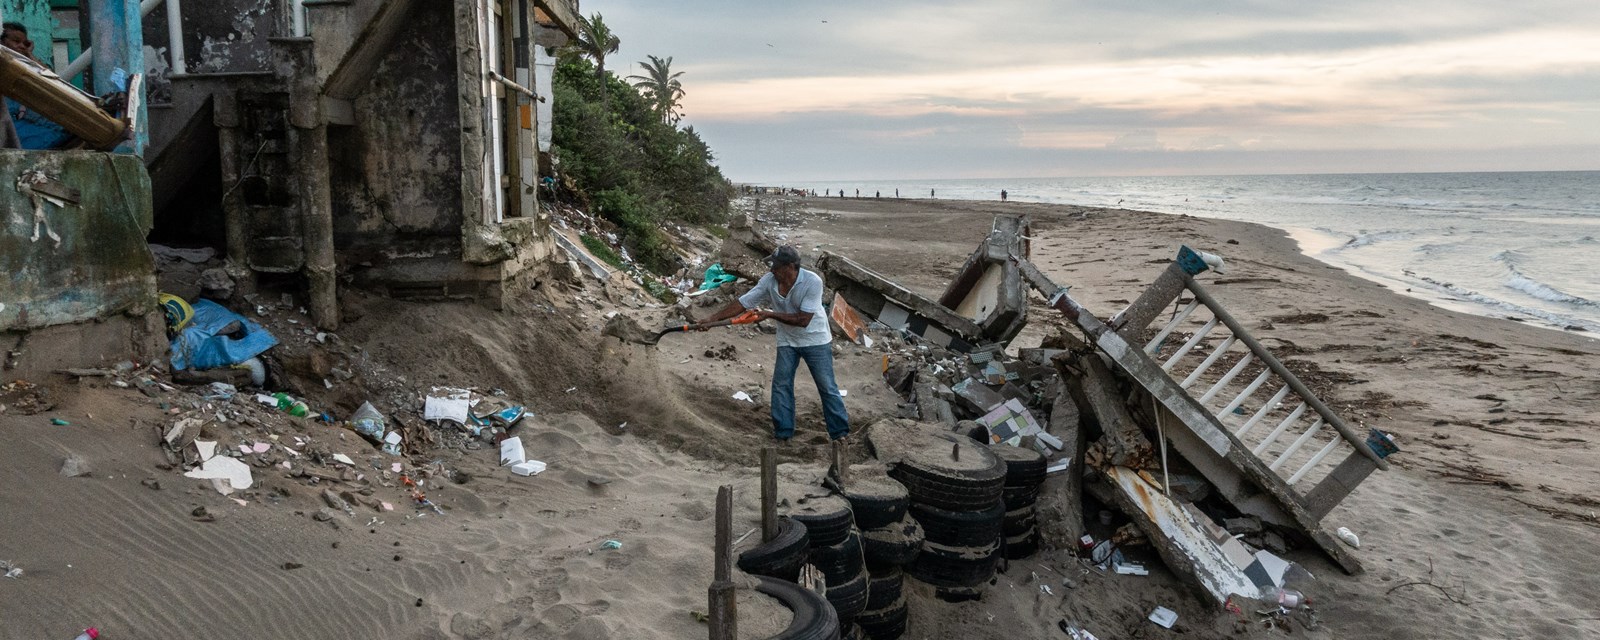 Hver ettermiddag spar senor Juan sand fra eiendommen sin i Tabasco, Mexico. For fem år siden kollapset huset på stranden.